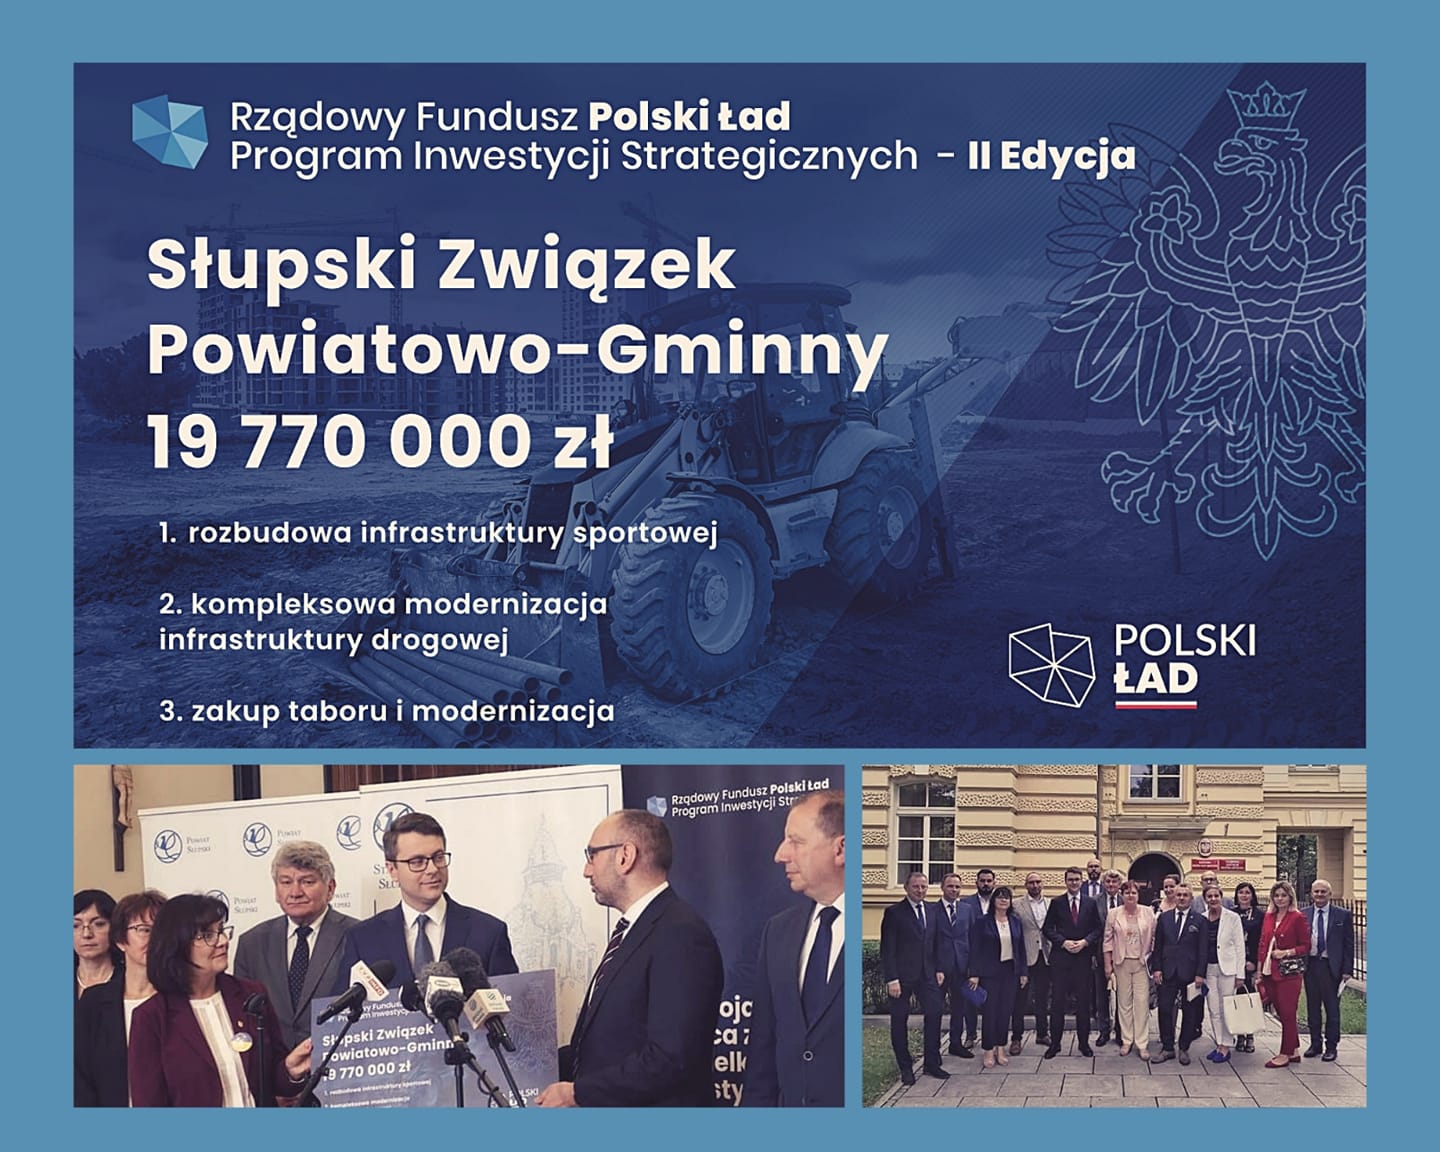 19 770 000 zł dla Słupskiego Związku Powiatowo-Gminnego